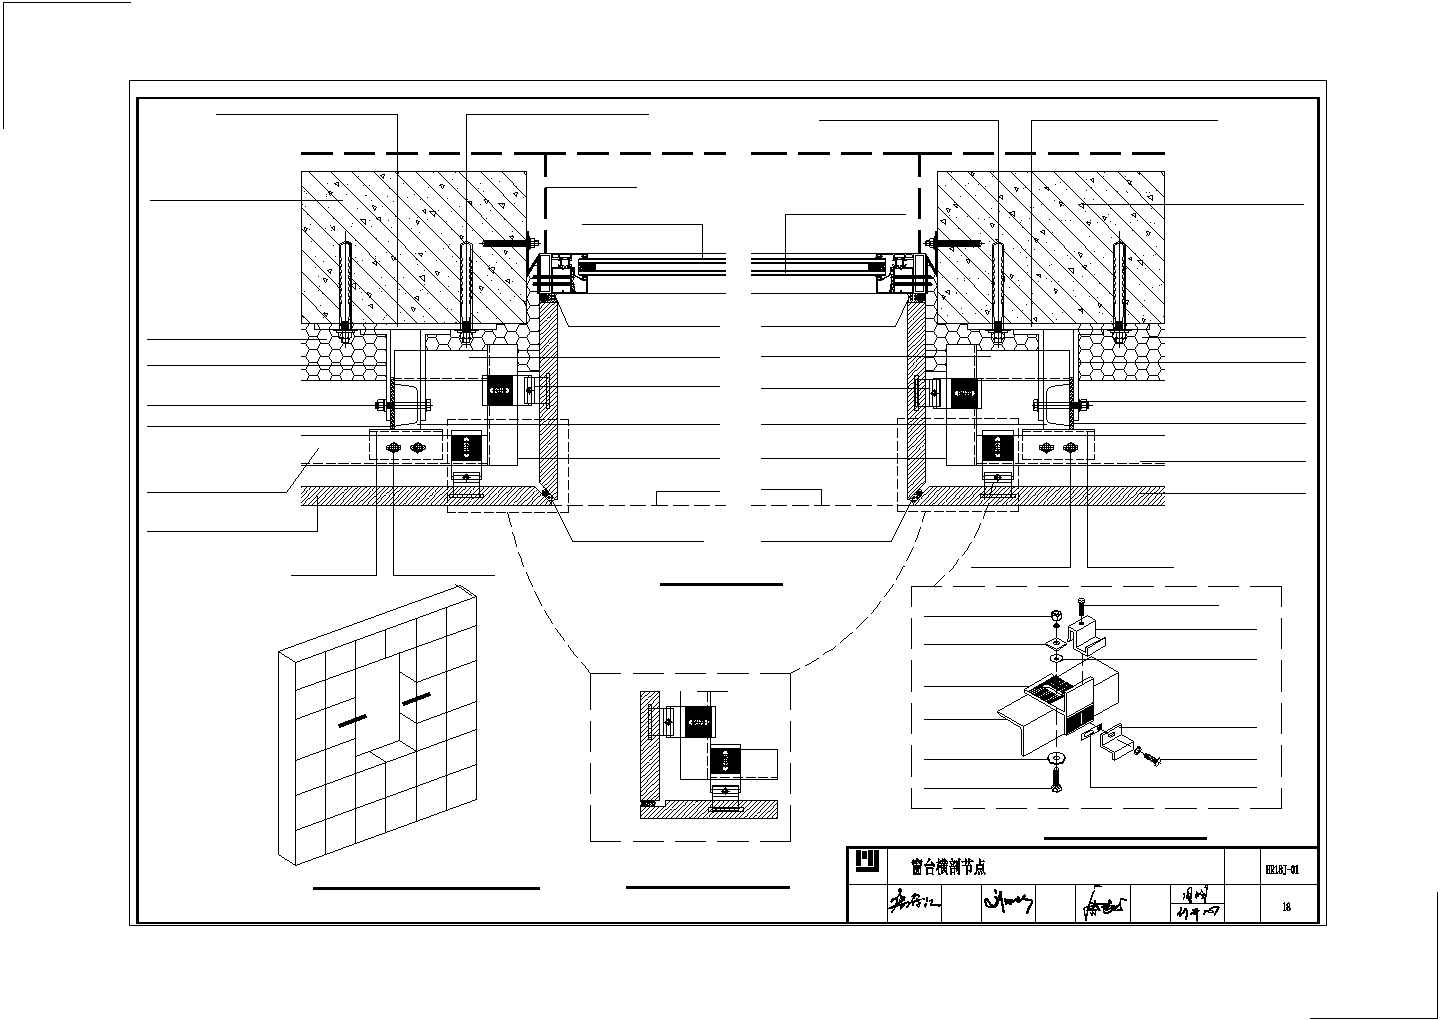 石材幕墙卡槽式安装系统CAD图